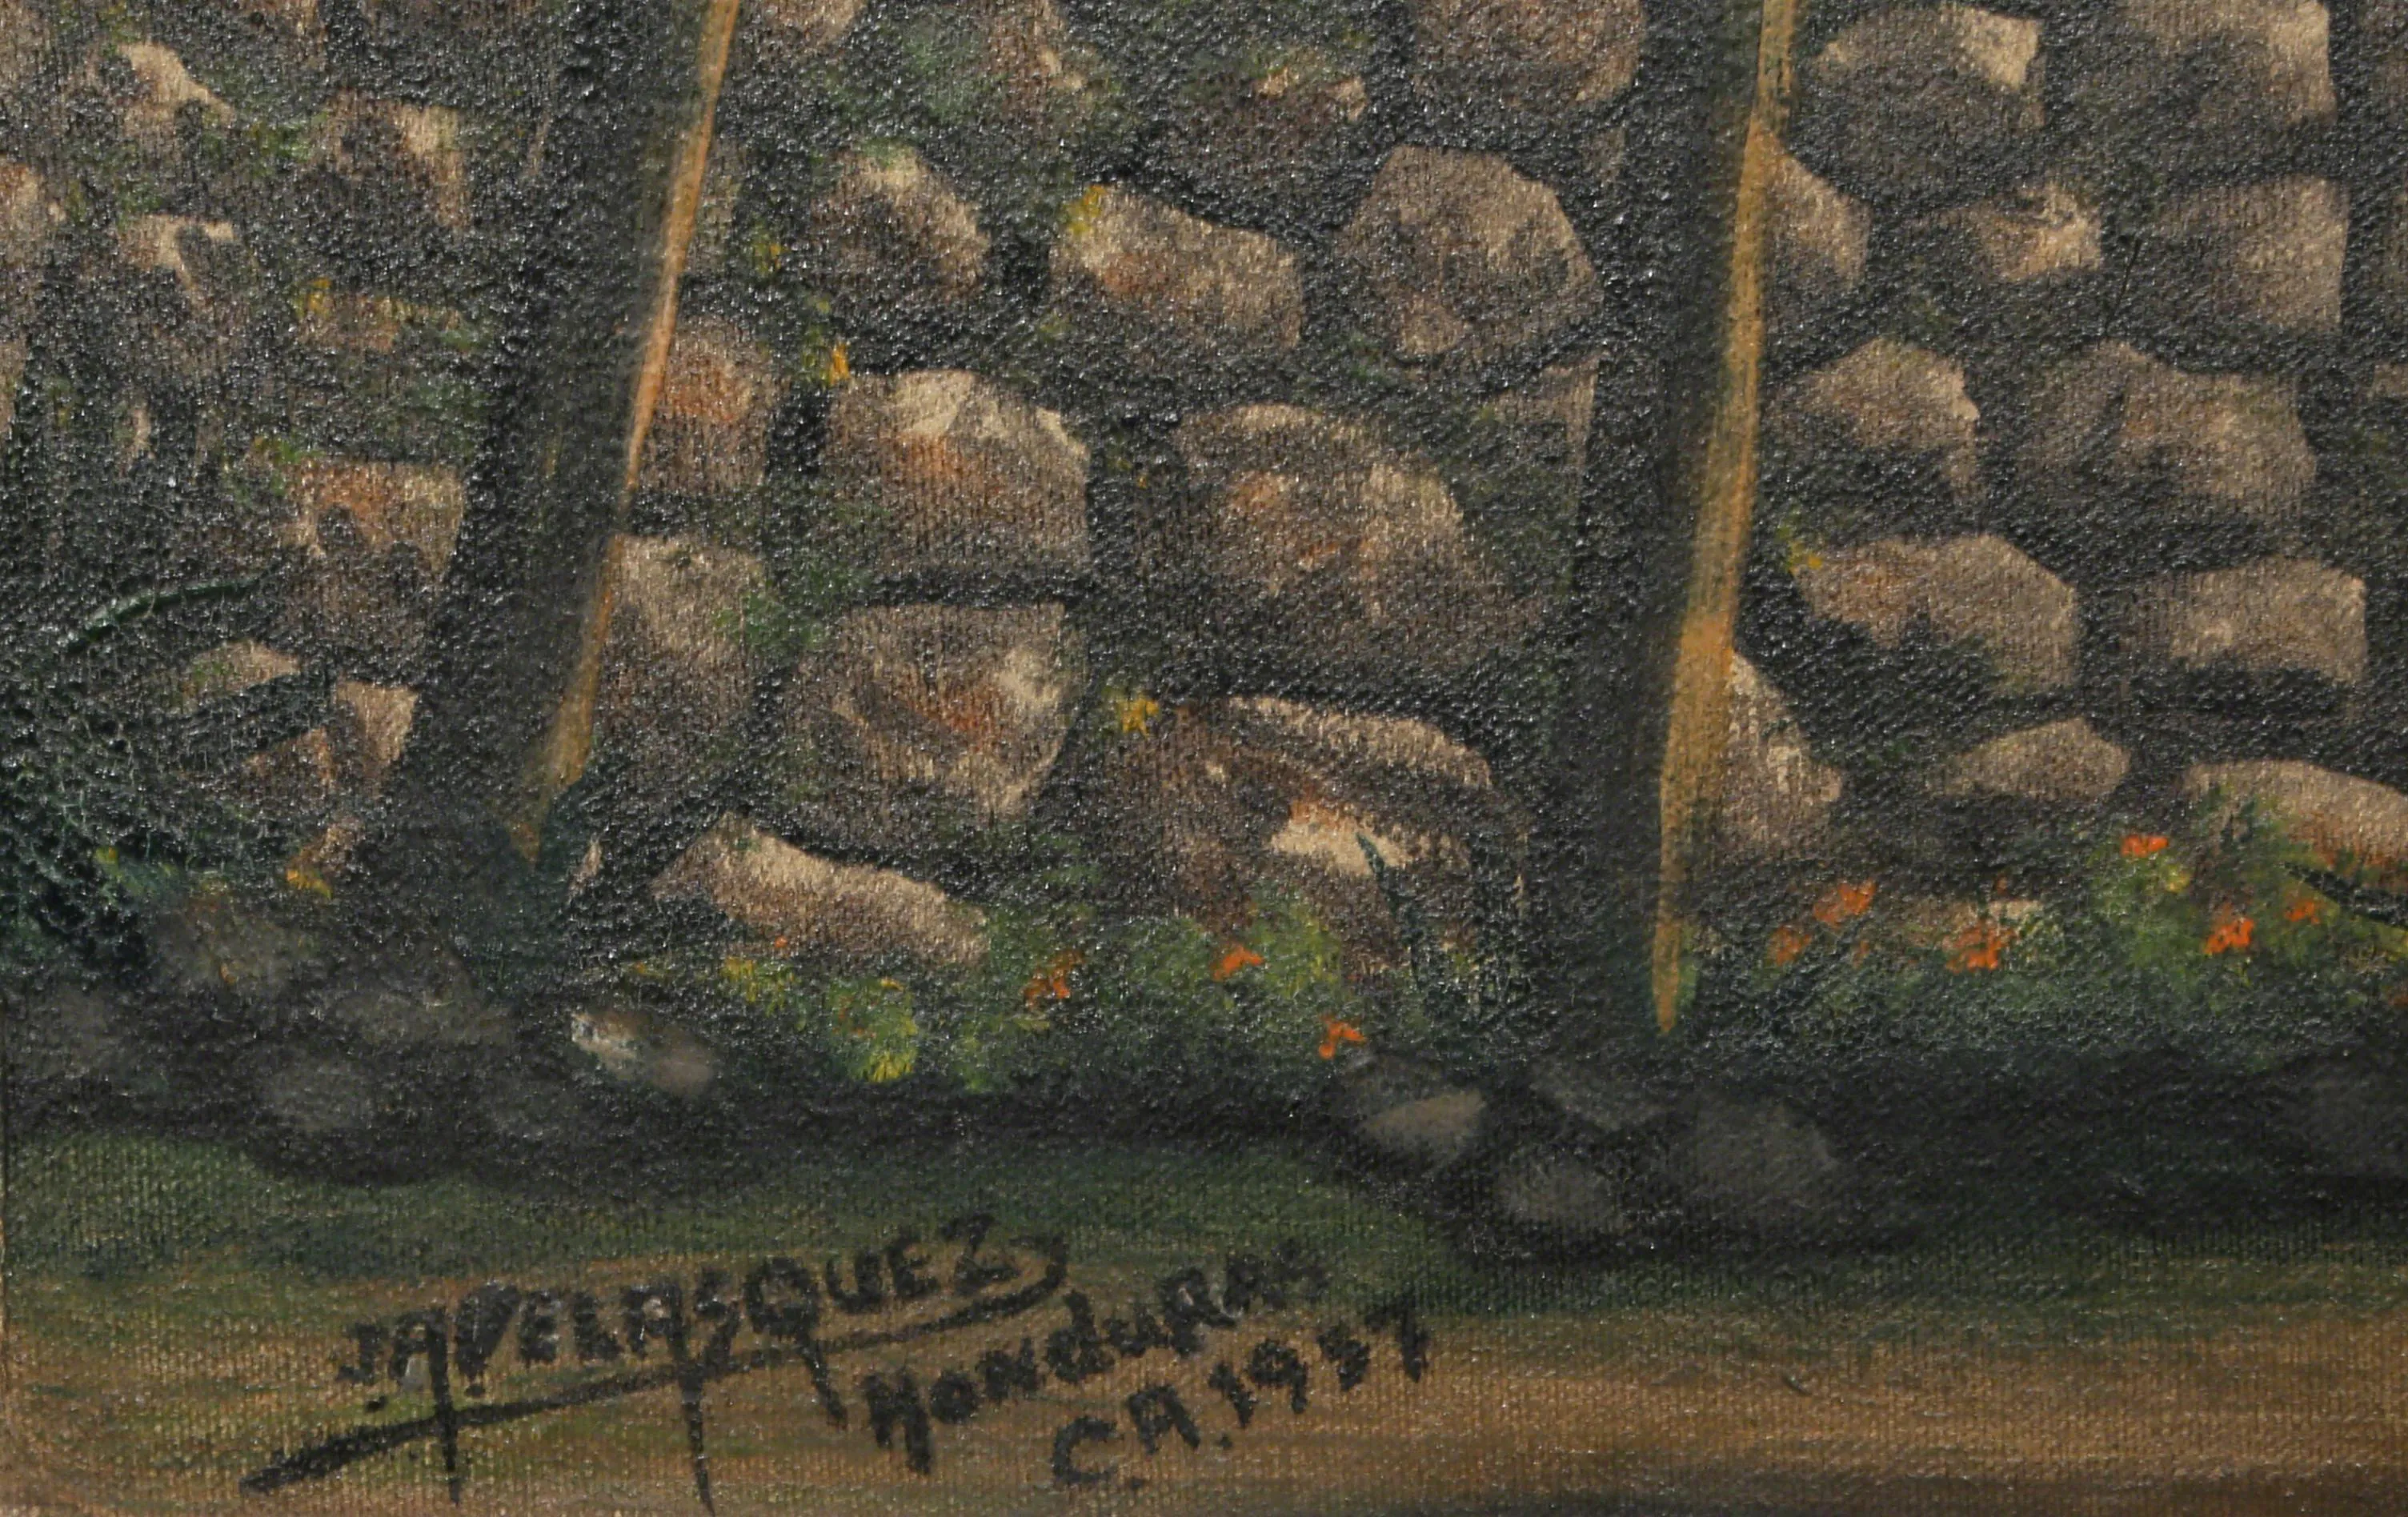 Jose Antonio Velasquez, San Antonio Oriente, Honduras c.a., Oil Painting